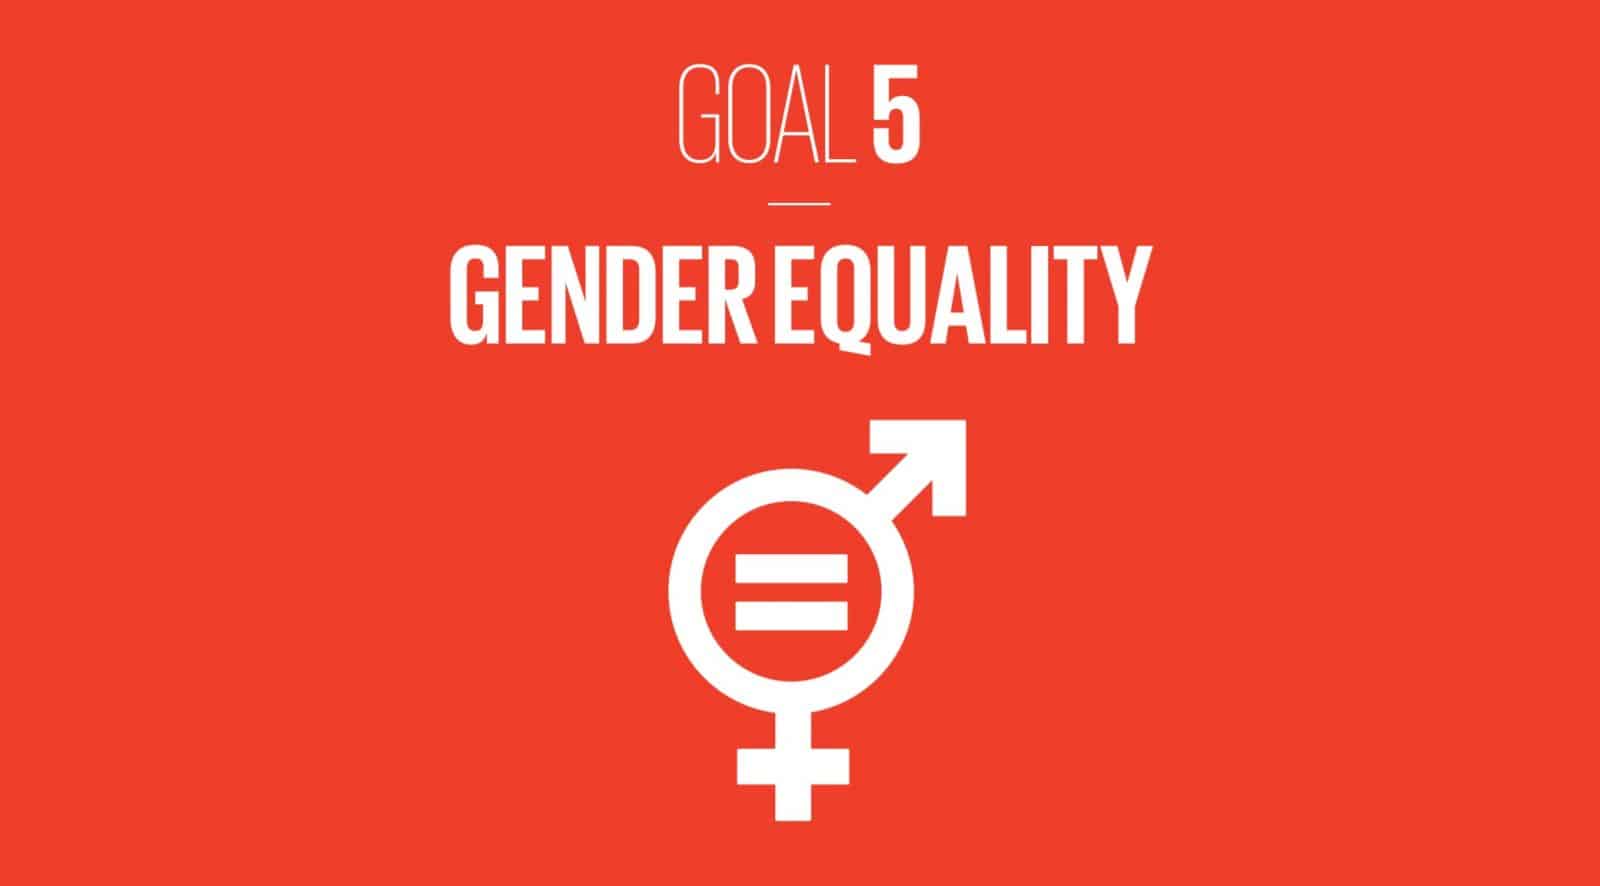 goal 5 gender equality essay